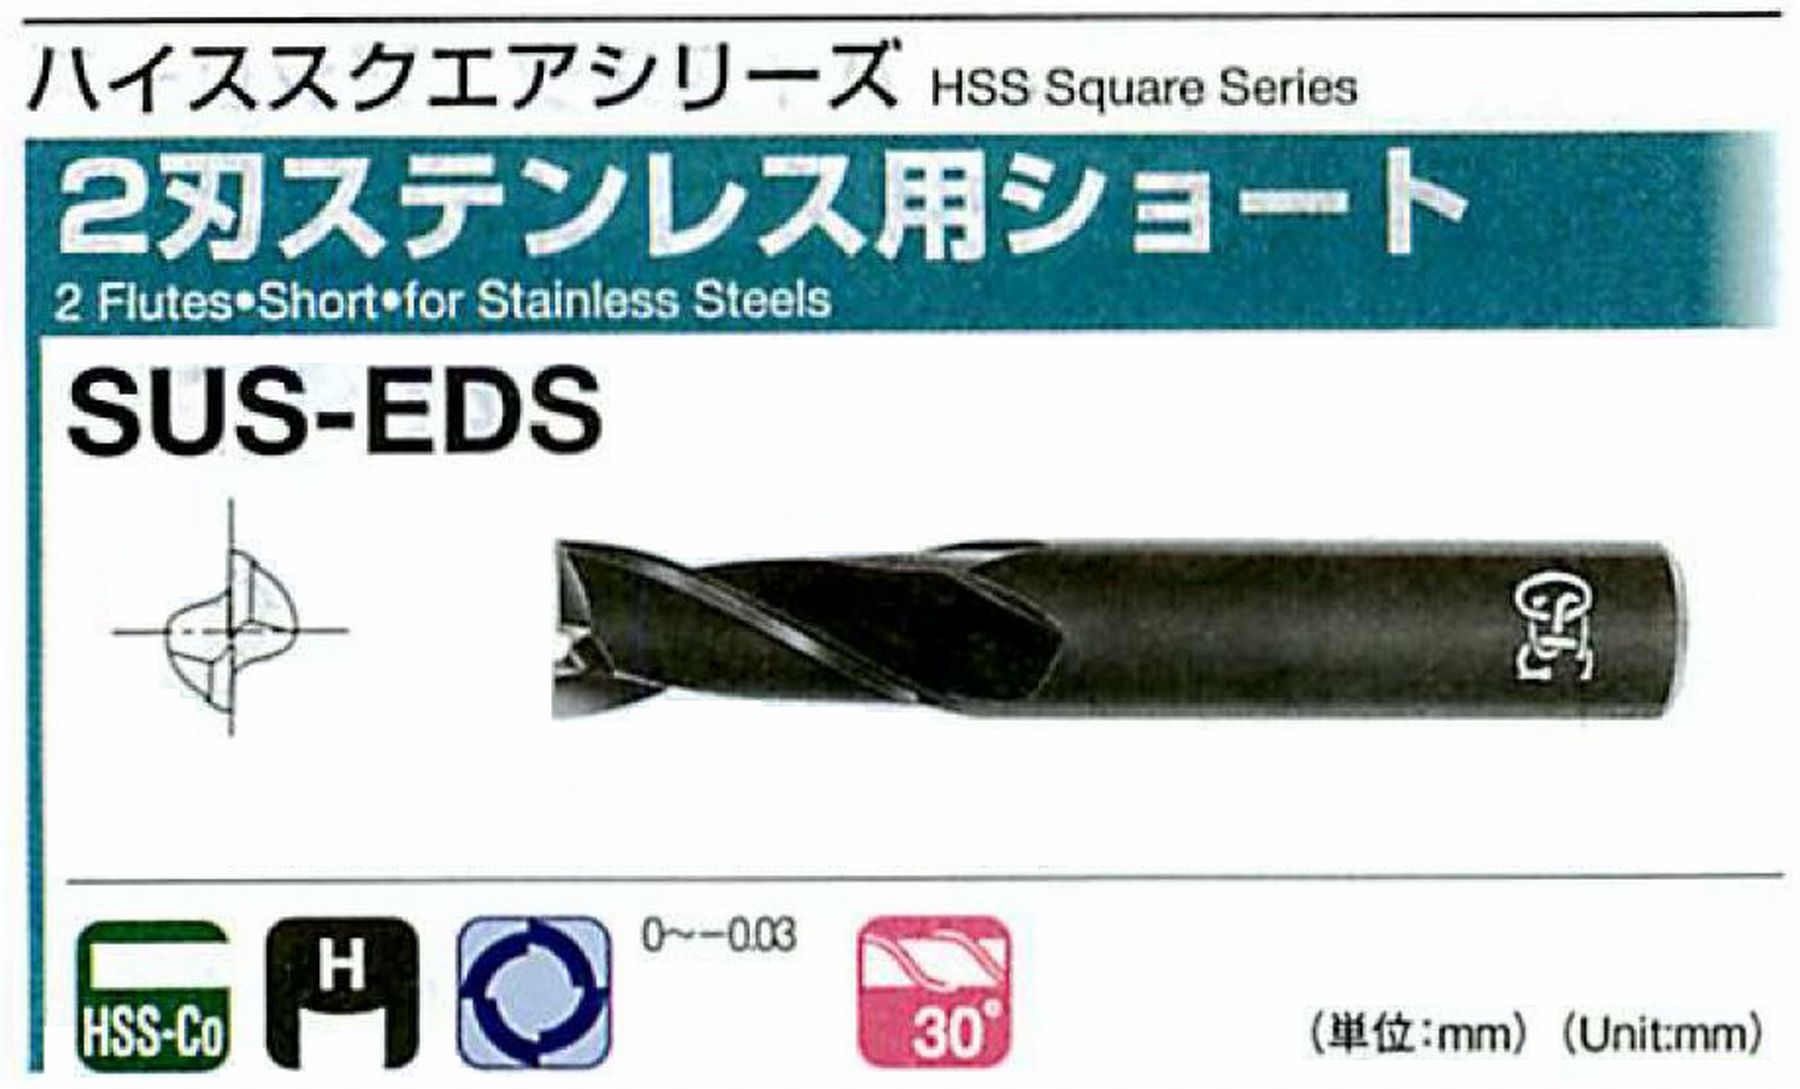 オーエスジー/OSG 2刃ステンレス用ショート SUS-EDS 外径10 全長70 刃長18 シャンク径10mm